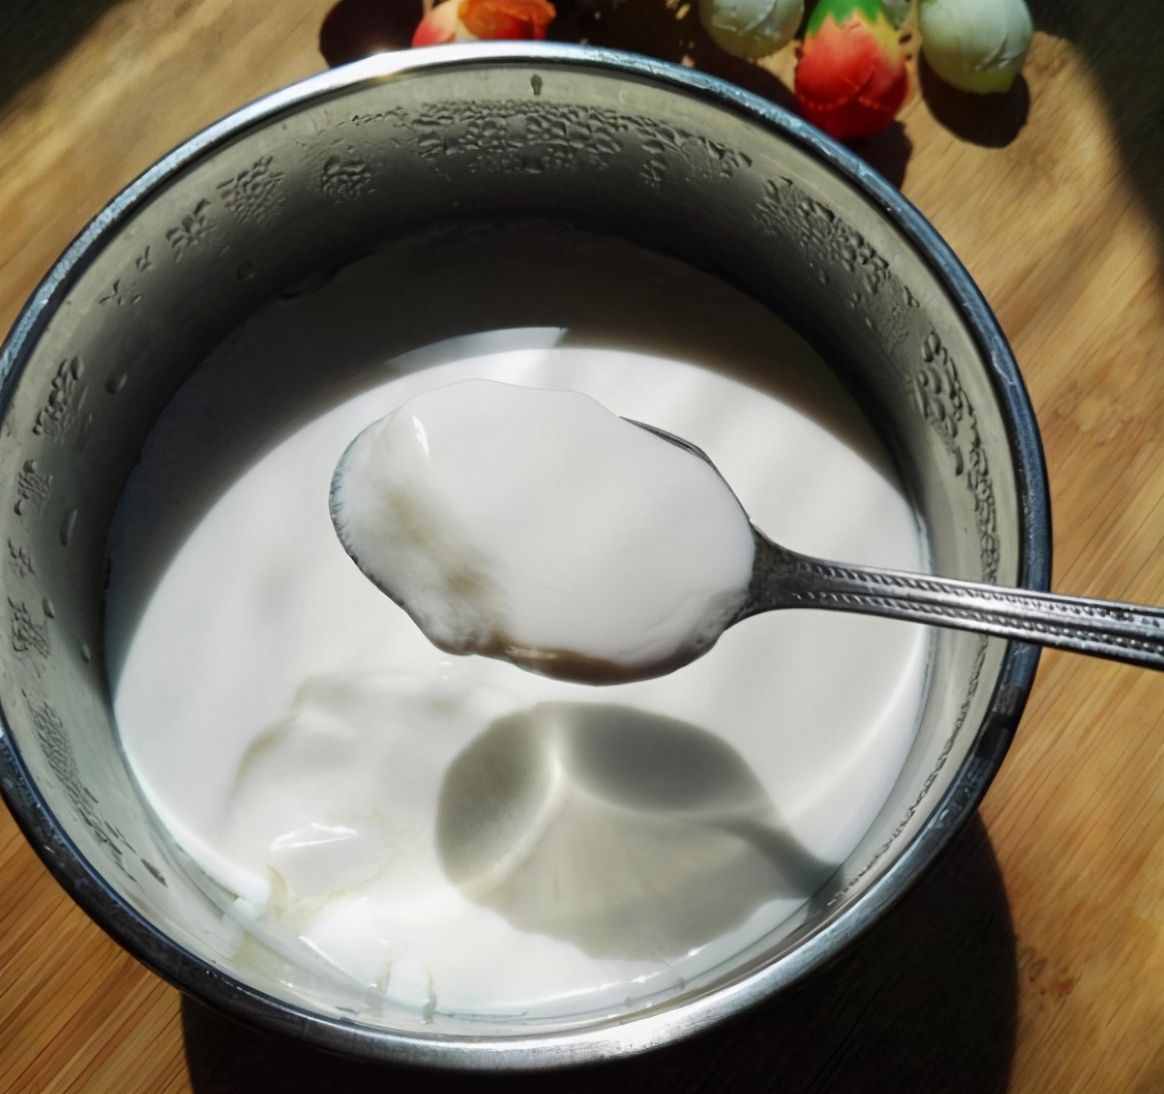 以后再也不用舔酸奶盖了，在家也能DIY自制酸奶，太神奇了